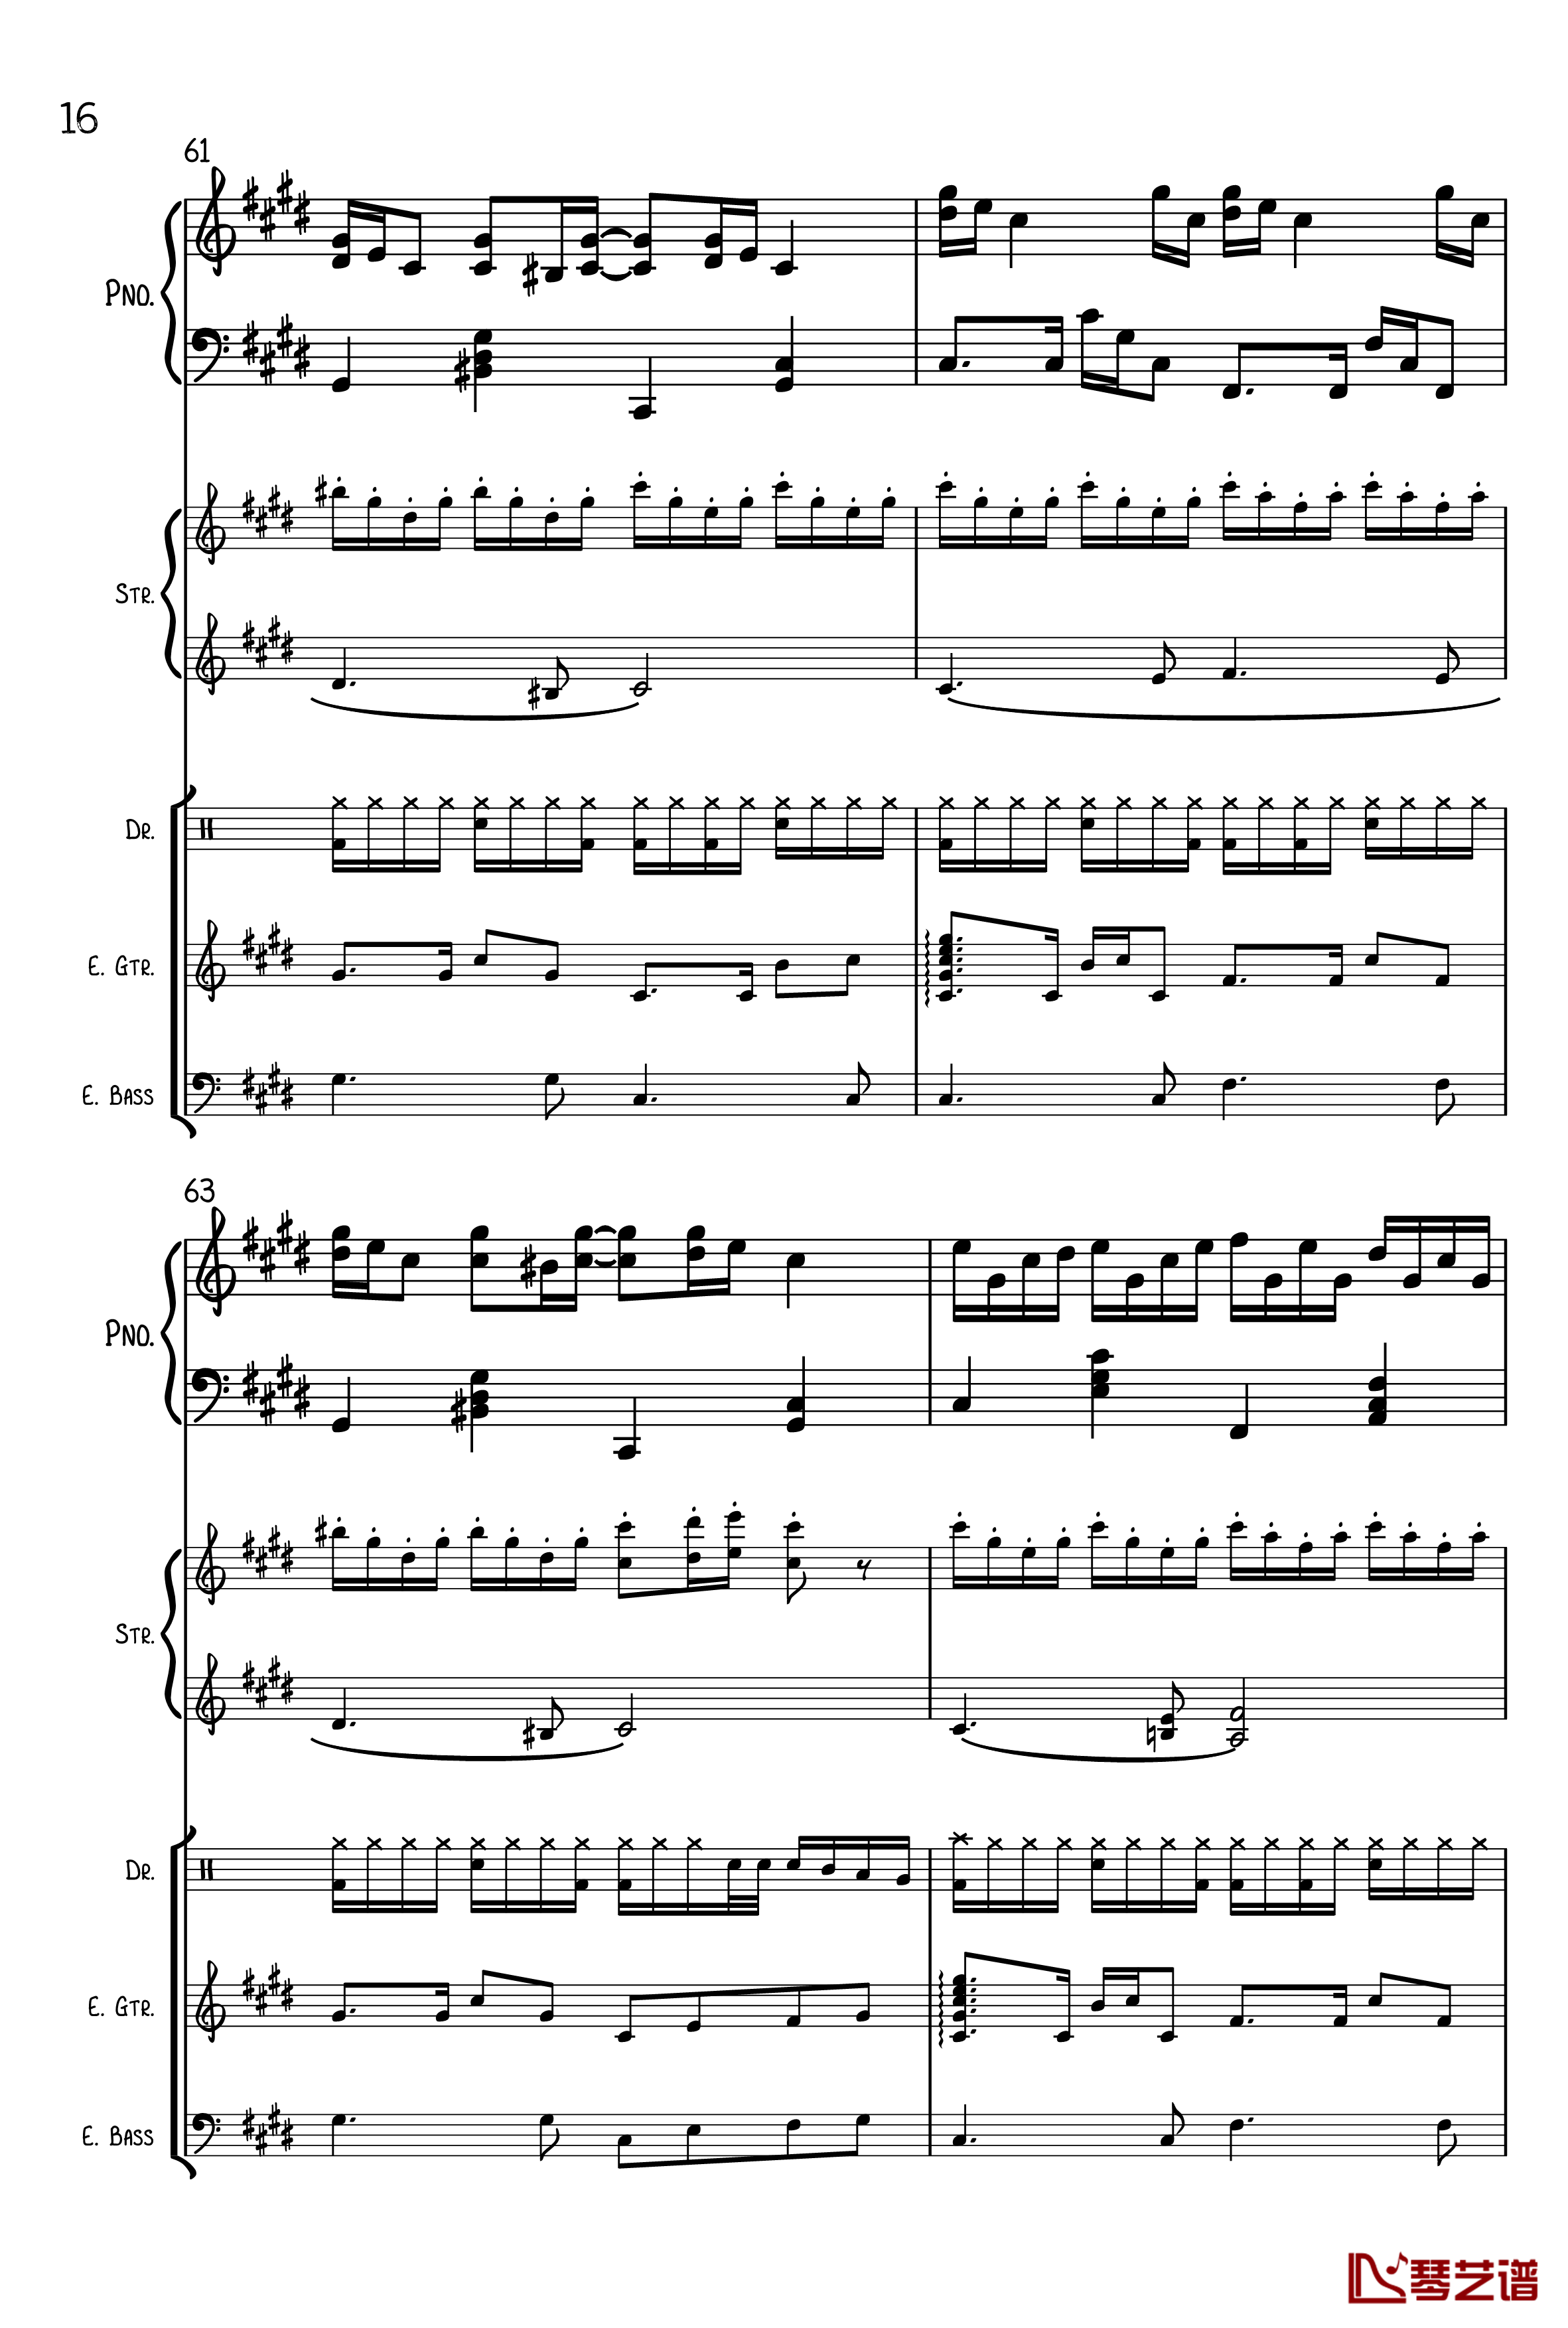 克罗地亚狂想曲钢琴谱-总谱-马克西姆-Maksim·Mrvica16